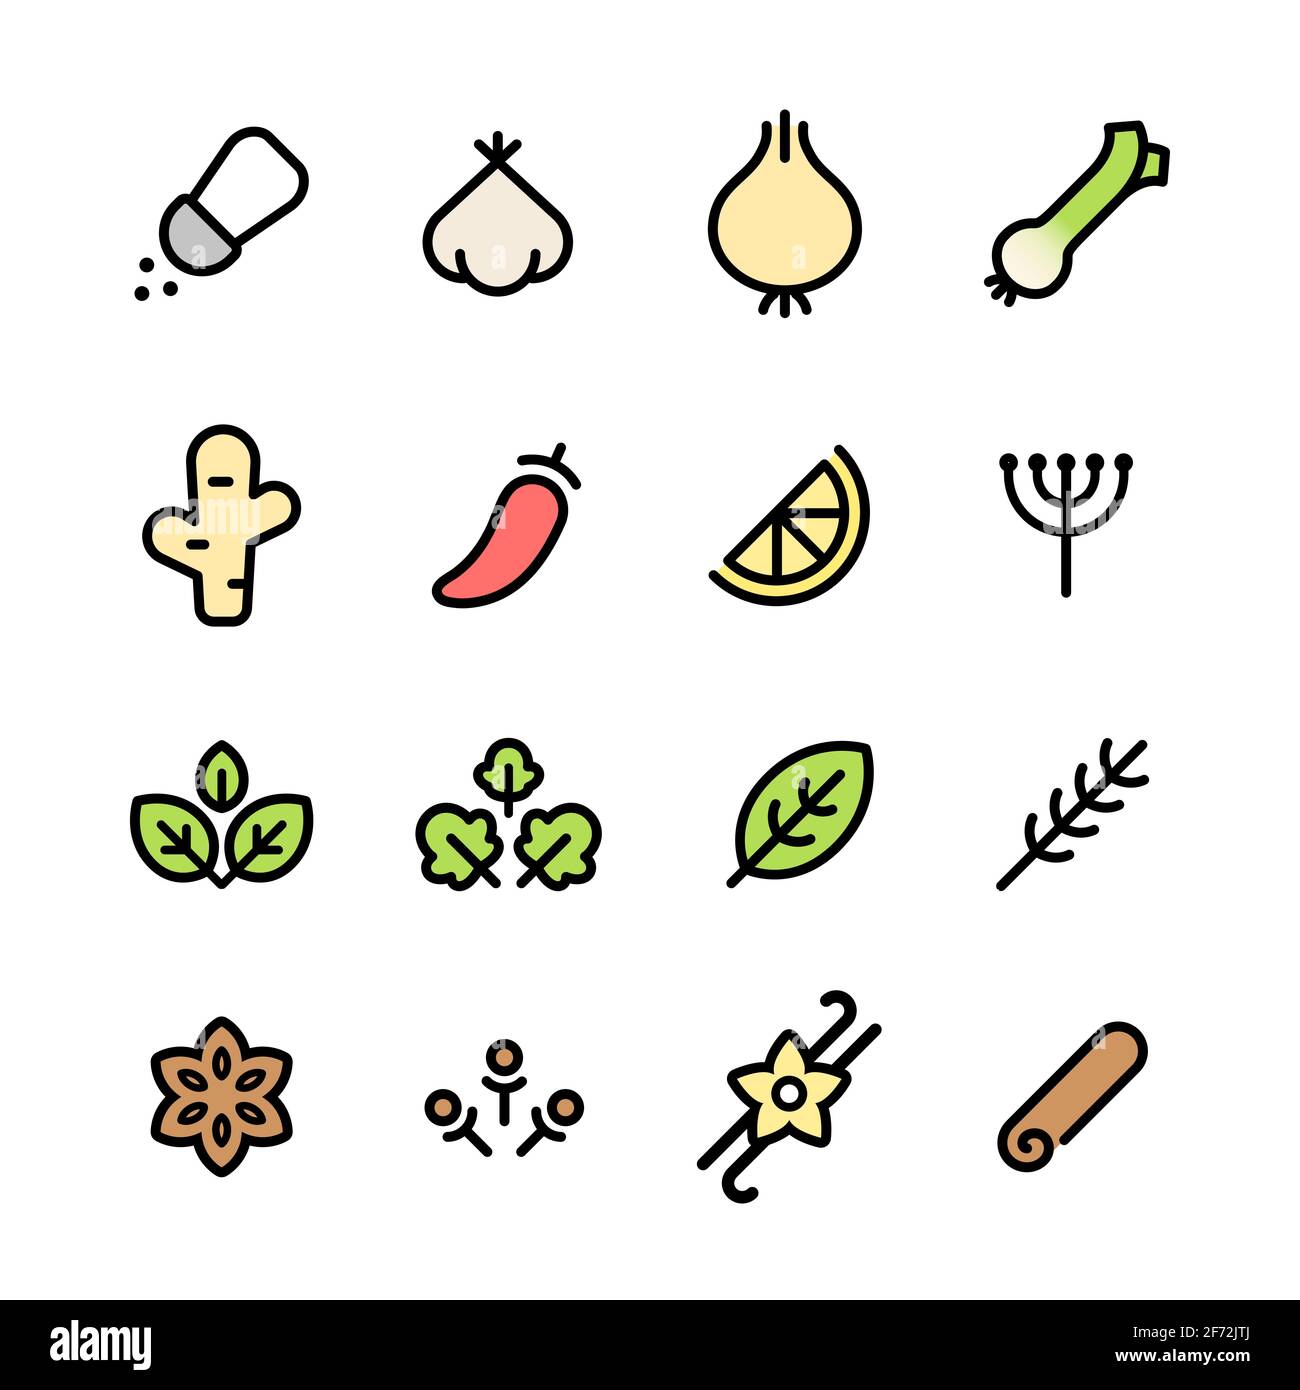 Icon-Set für Gewürze und Kräuter. Einfache und minimale Piktogramme von gängigen Aromaten und Gewürzen. Vektorgrafik. Stock Vektor